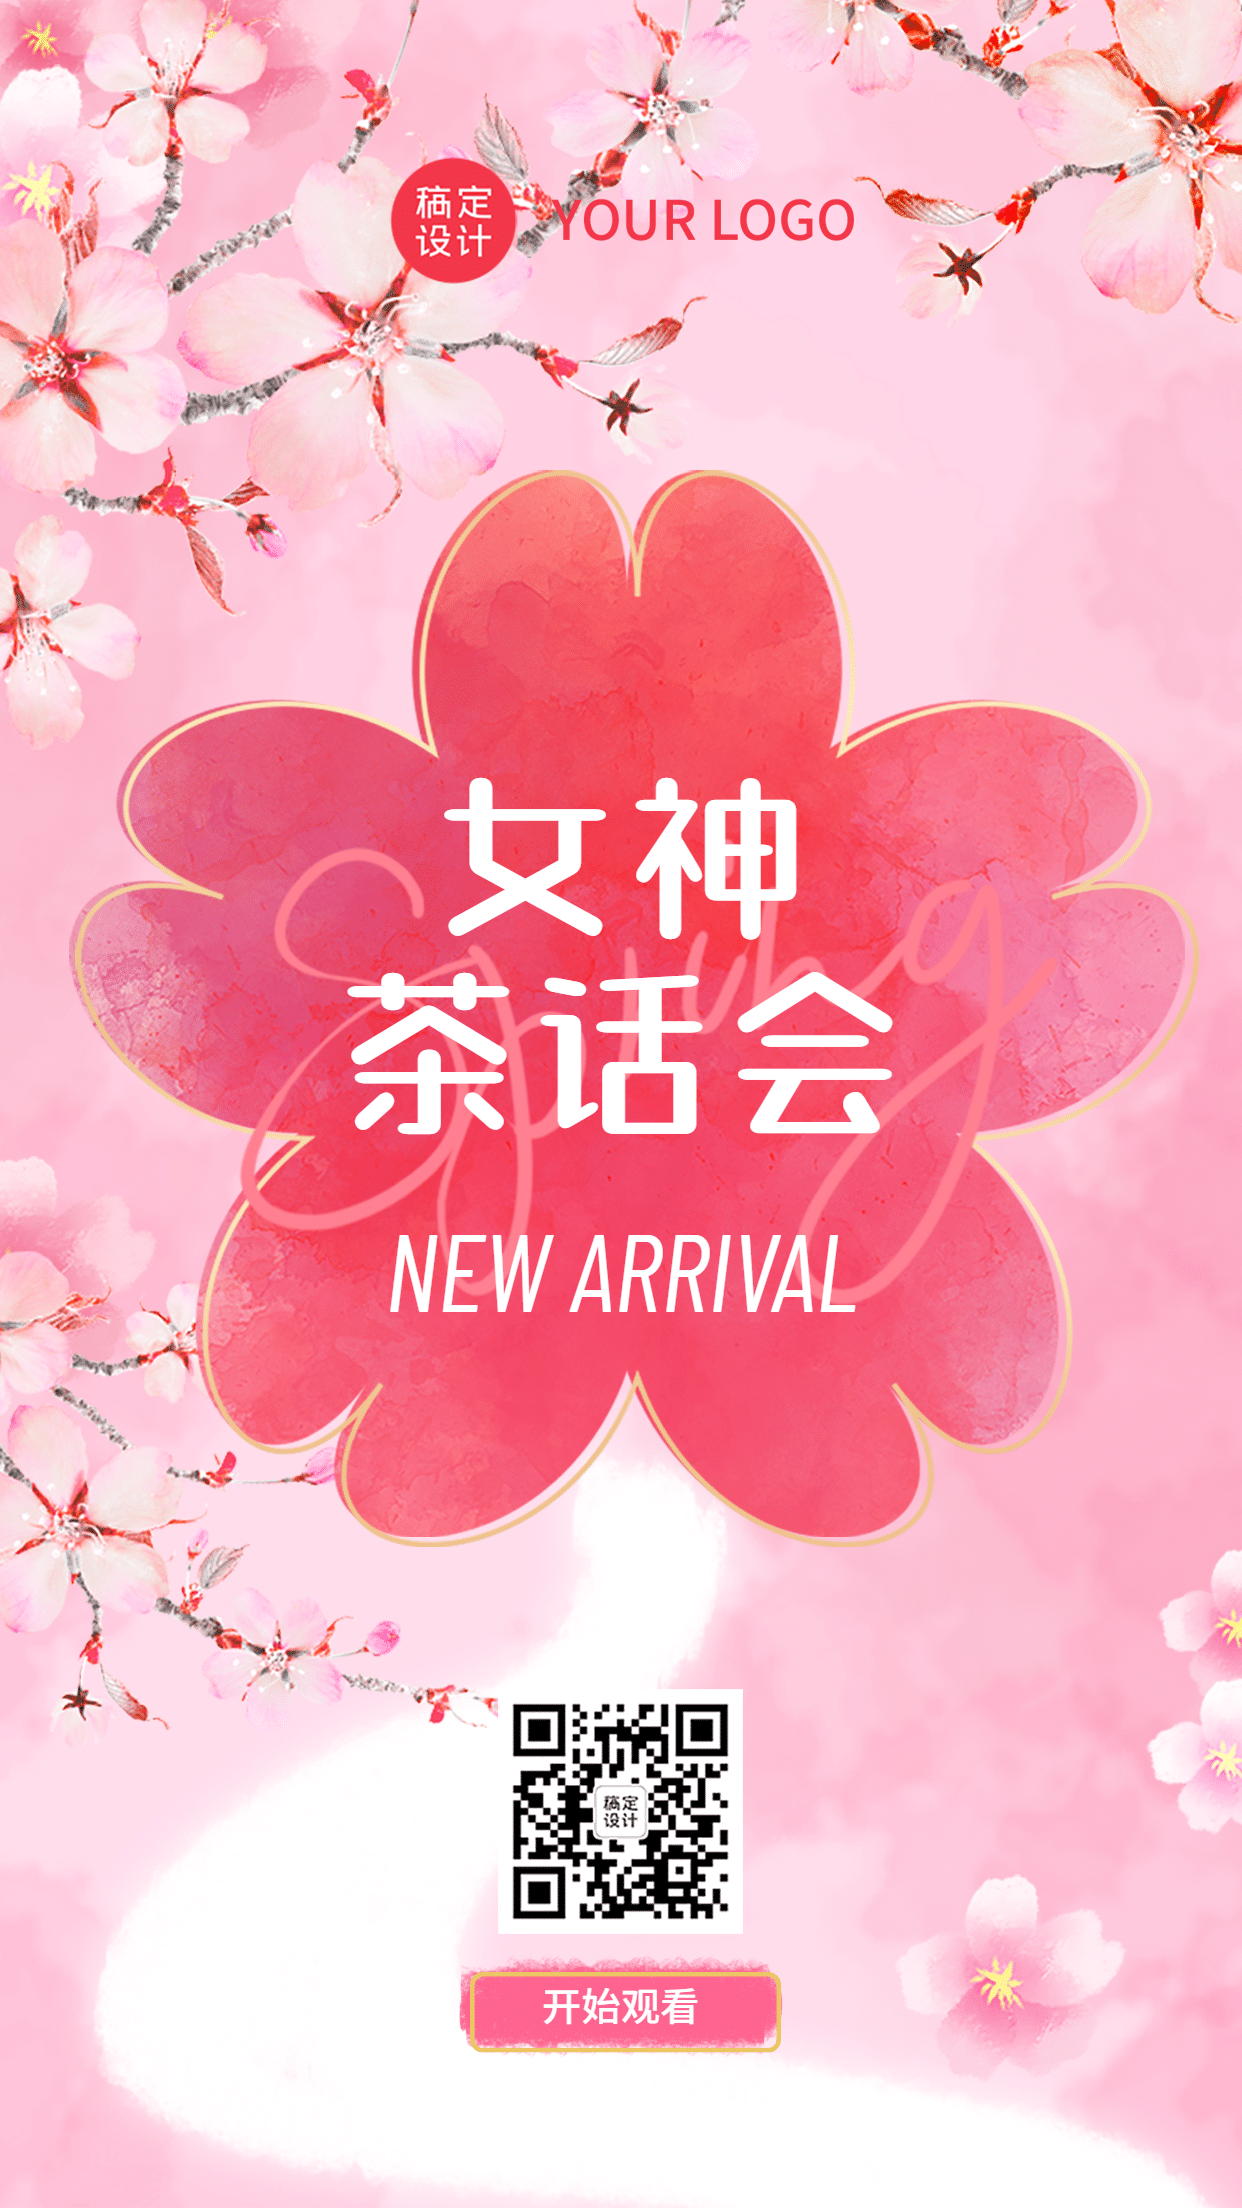 商品零售春季樱花节新品发布会邀请清新实景海报